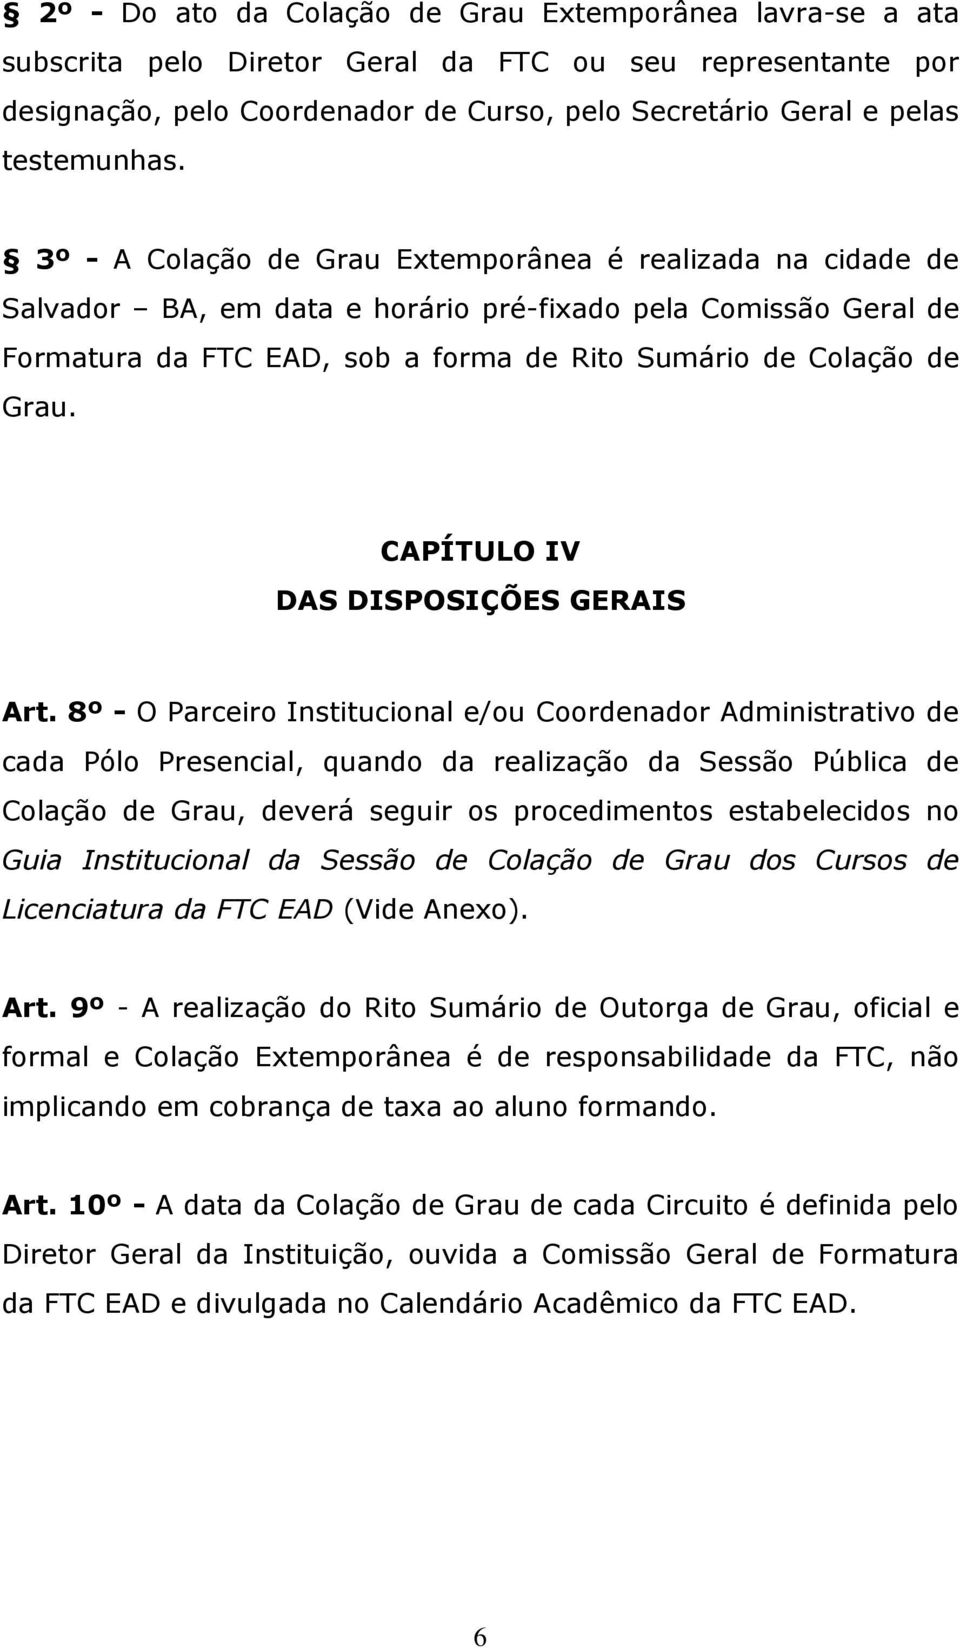 3º - A Colação de Grau Extemporânea é realizada na cidade de Salvador BA, em data e horário pré-fixado pela Comissão Geral de Formatura da FTC EAD, sob a forma de Rito Sumário de Colação de Grau.